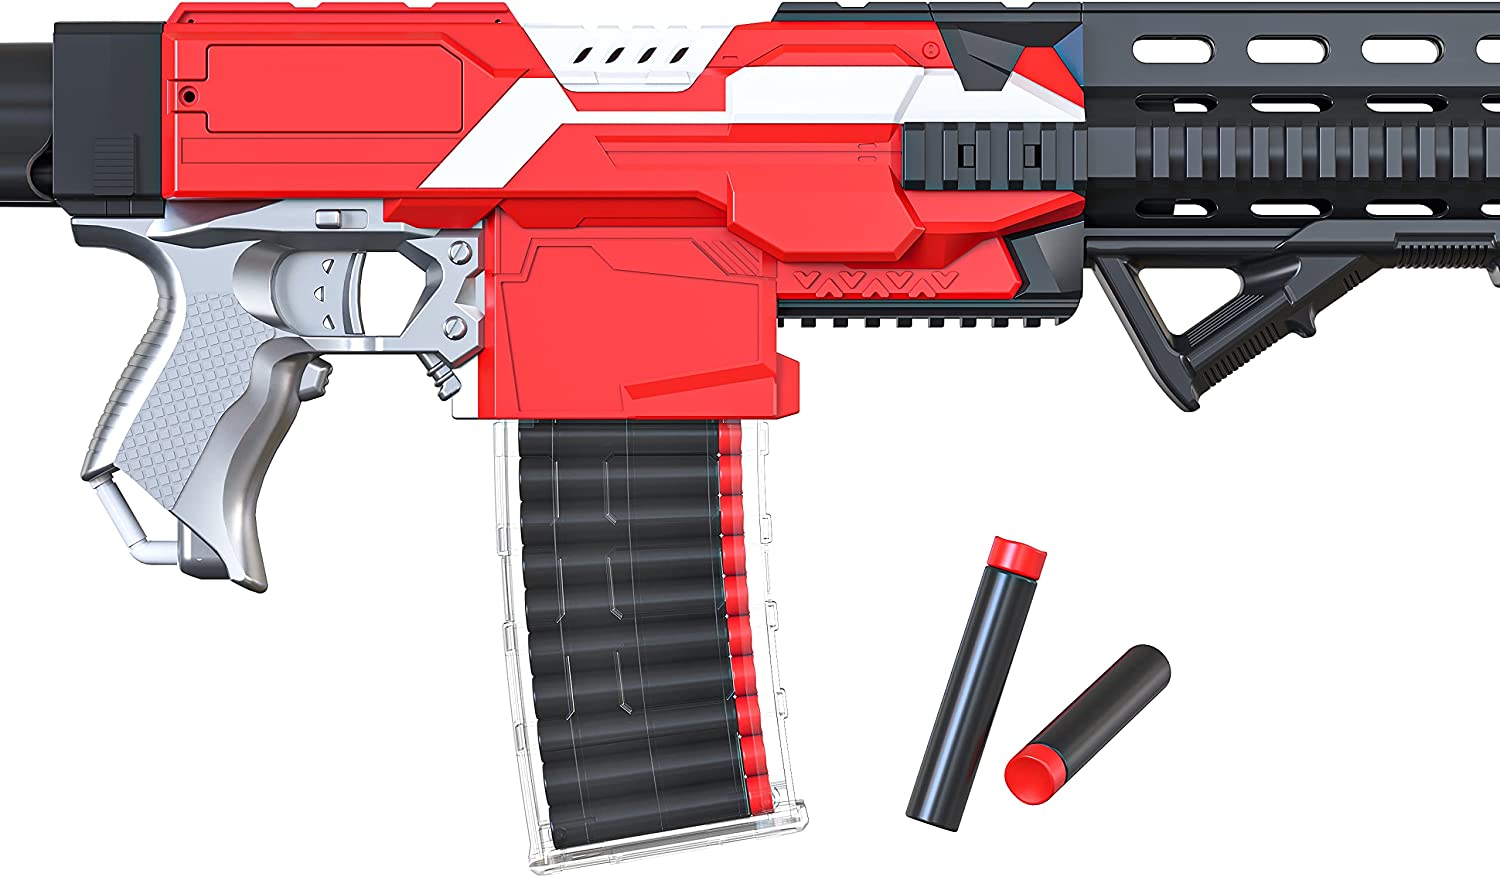 Toy Foam Blaster Gun, Shooting Guns Toy, Game Supplies